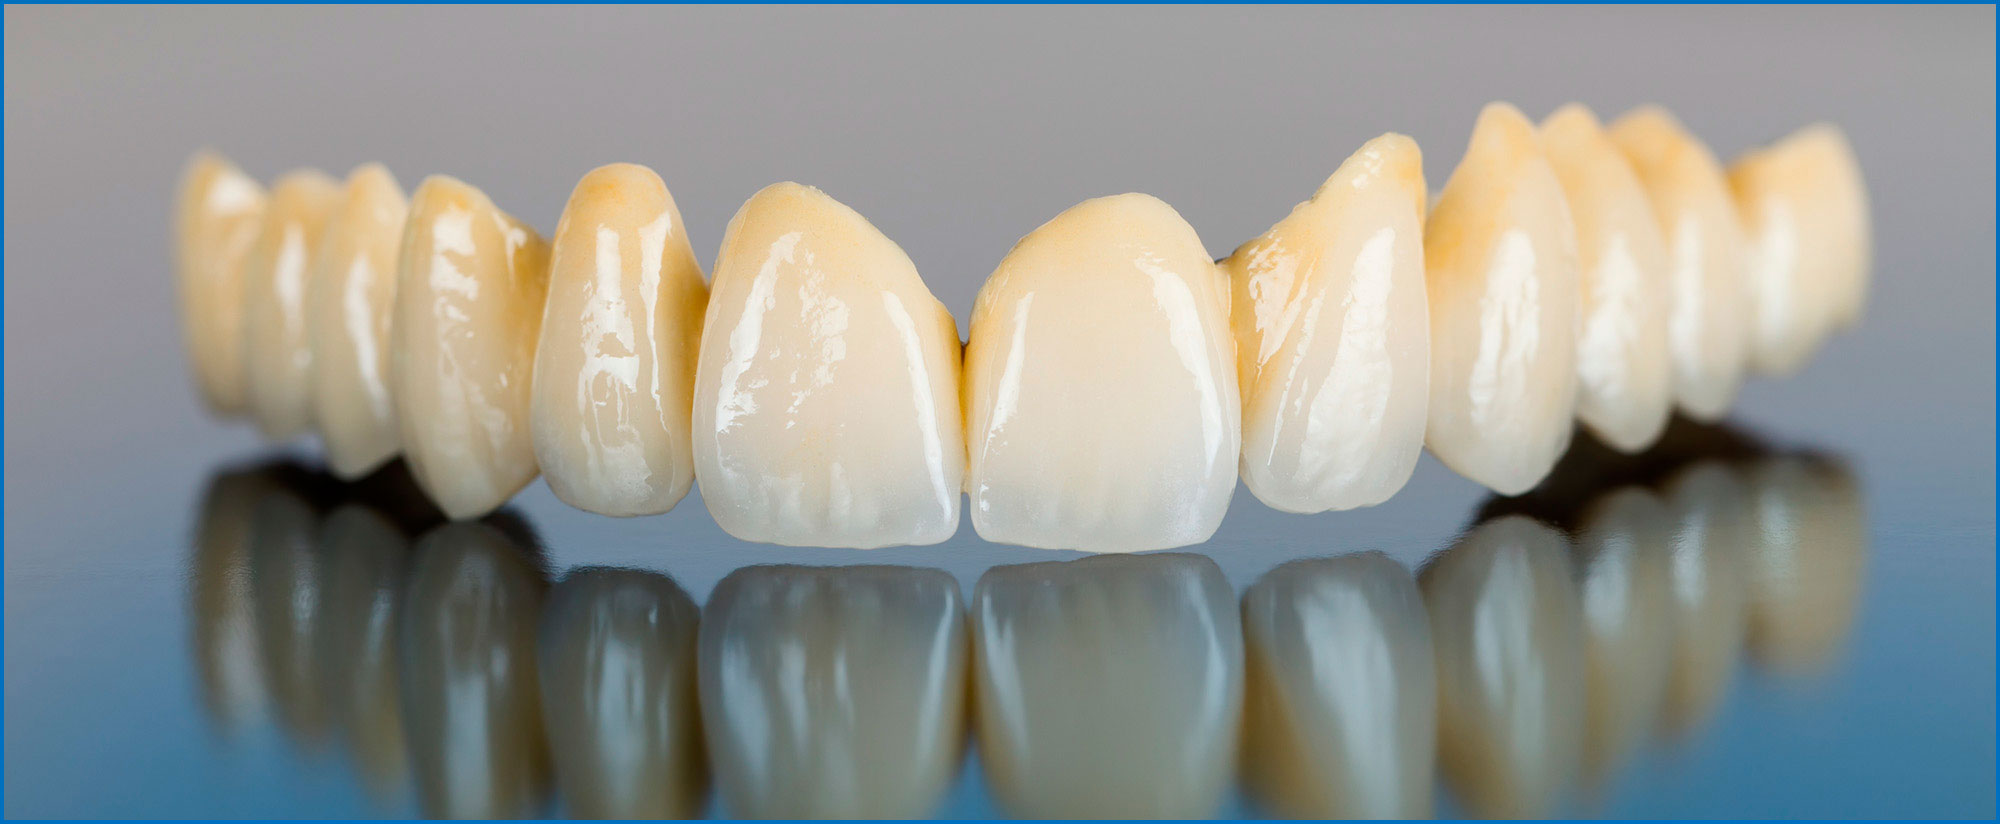 Металлокерамические коронки на зубы: состав, преимущества и недостатки